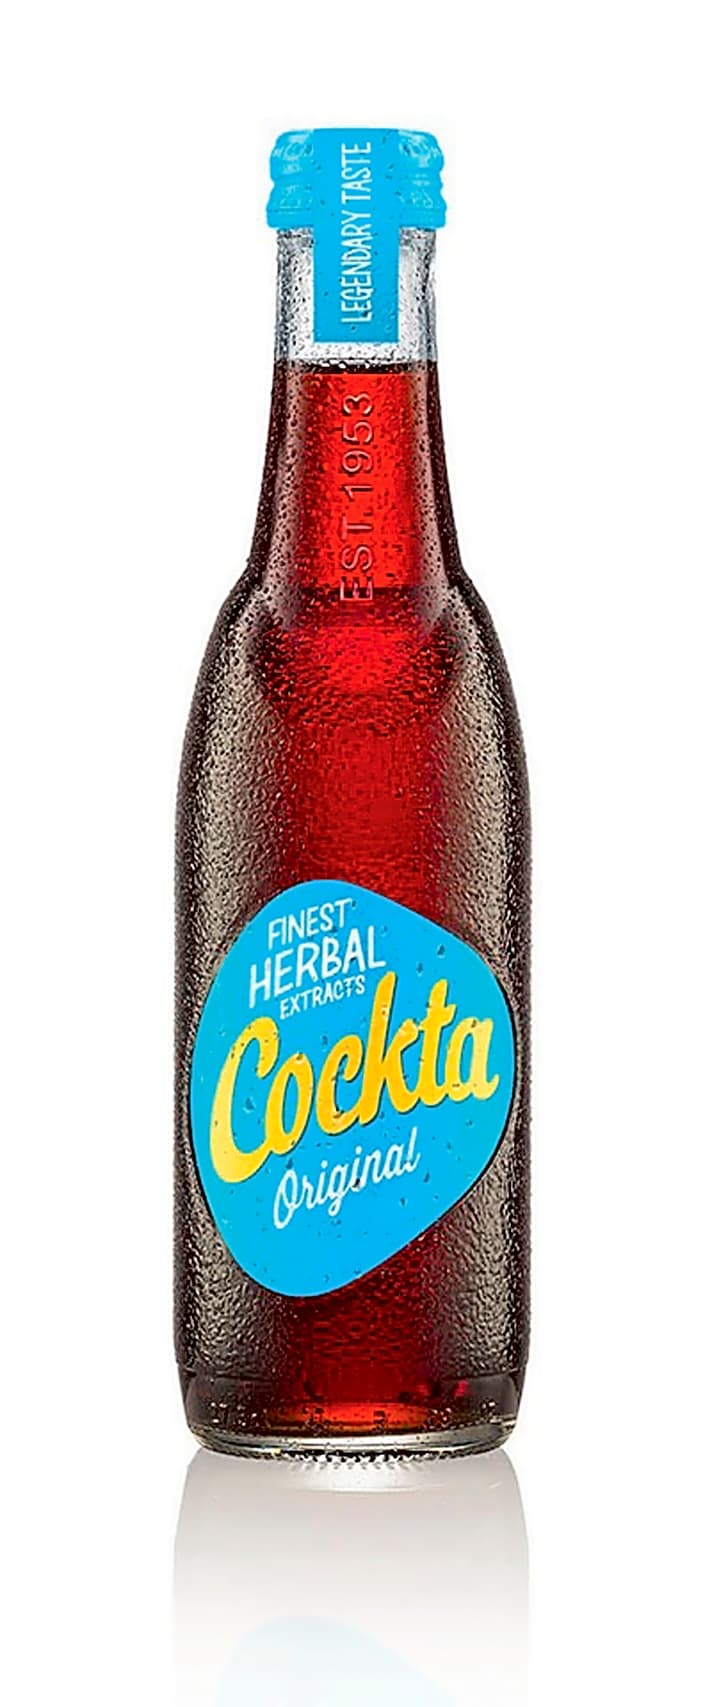   Cockta - das Original